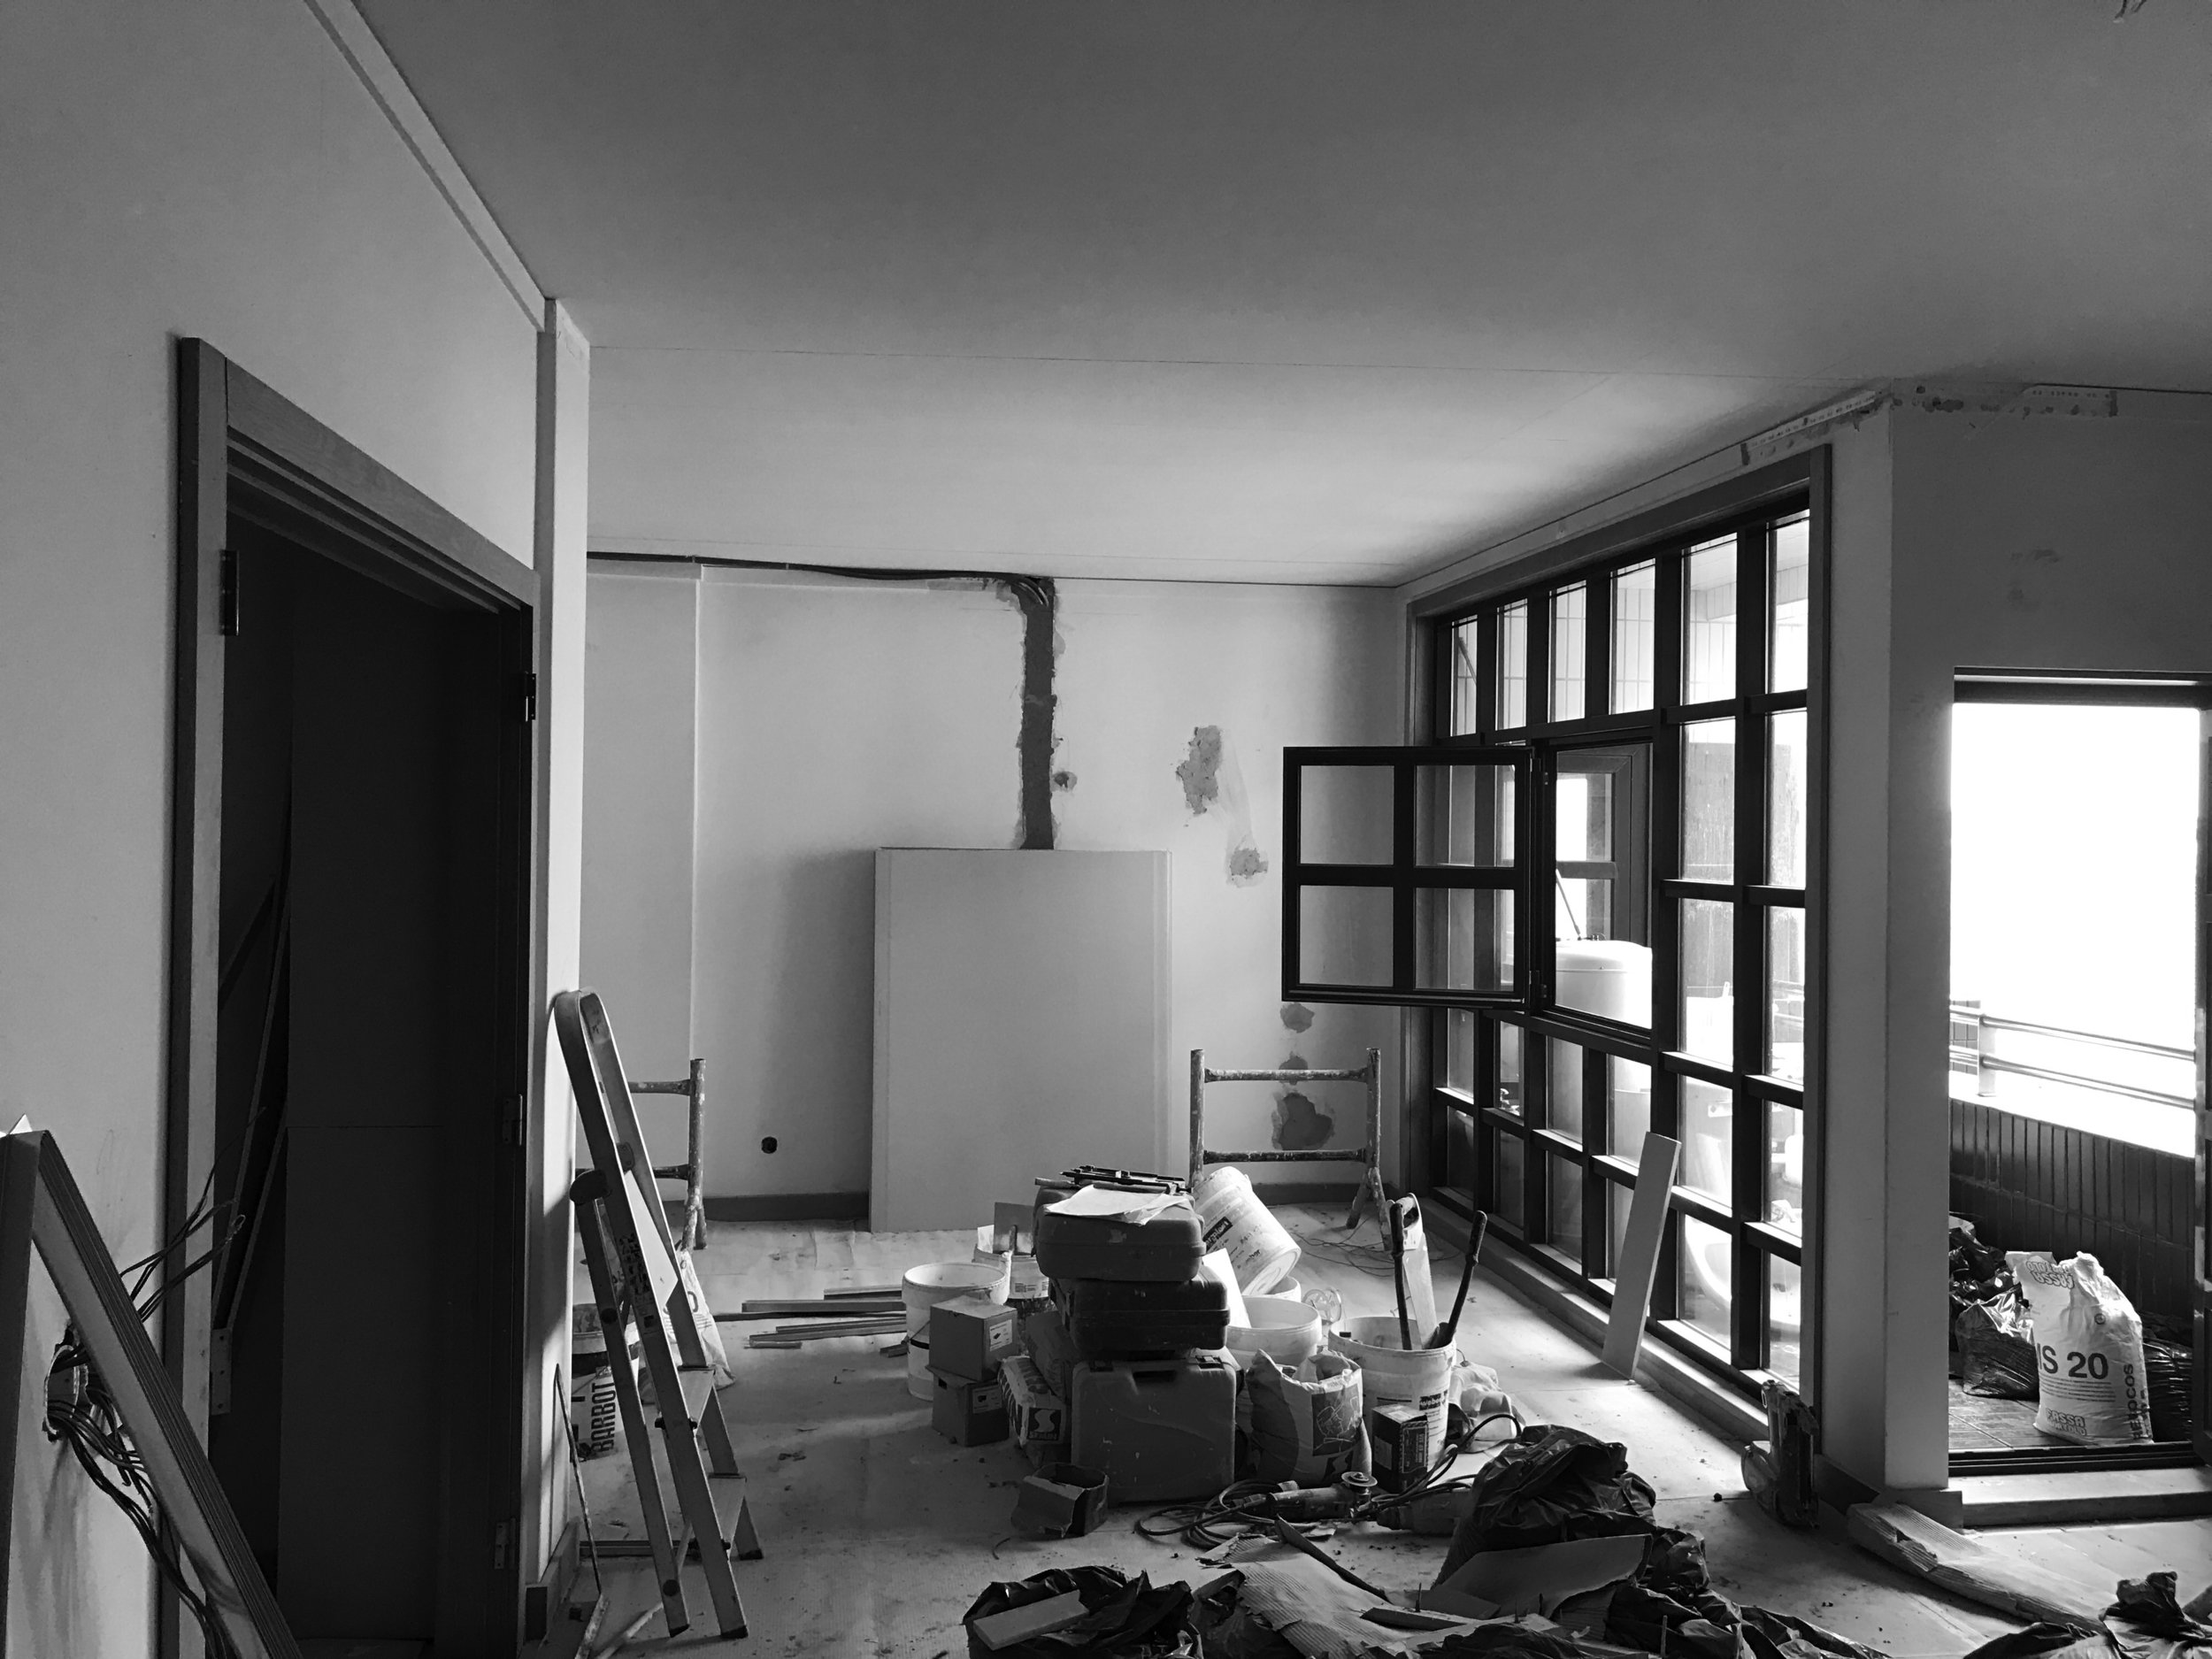 Apartamento Azul Farol - Porto - EVA evolutionary architecture - EVA atelier - Arquitecto - Remodelação (13).jpg